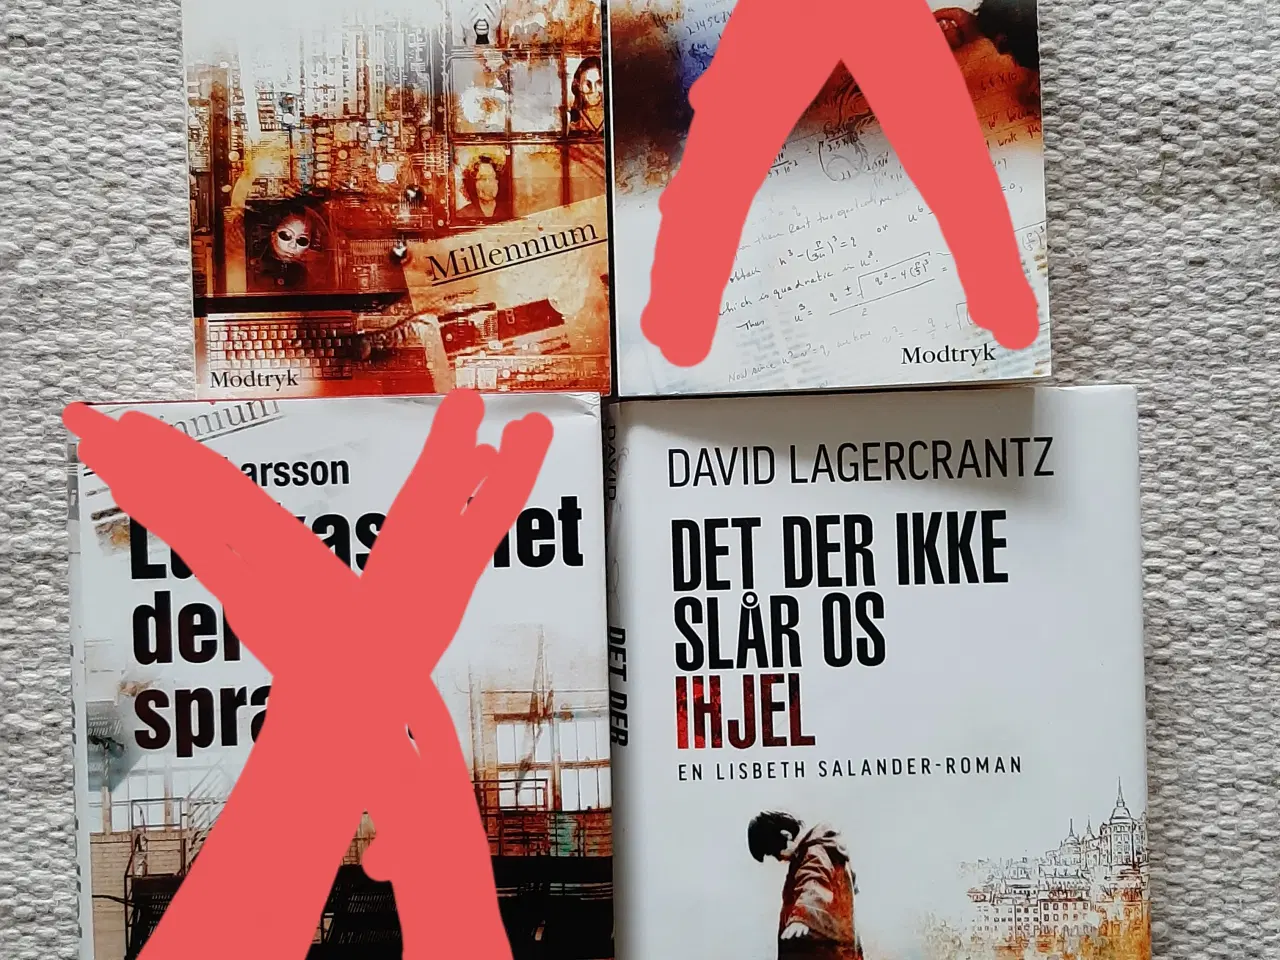 Billede 1 - 2 stk Stieg Larsson/ David Lagercrantz bøger